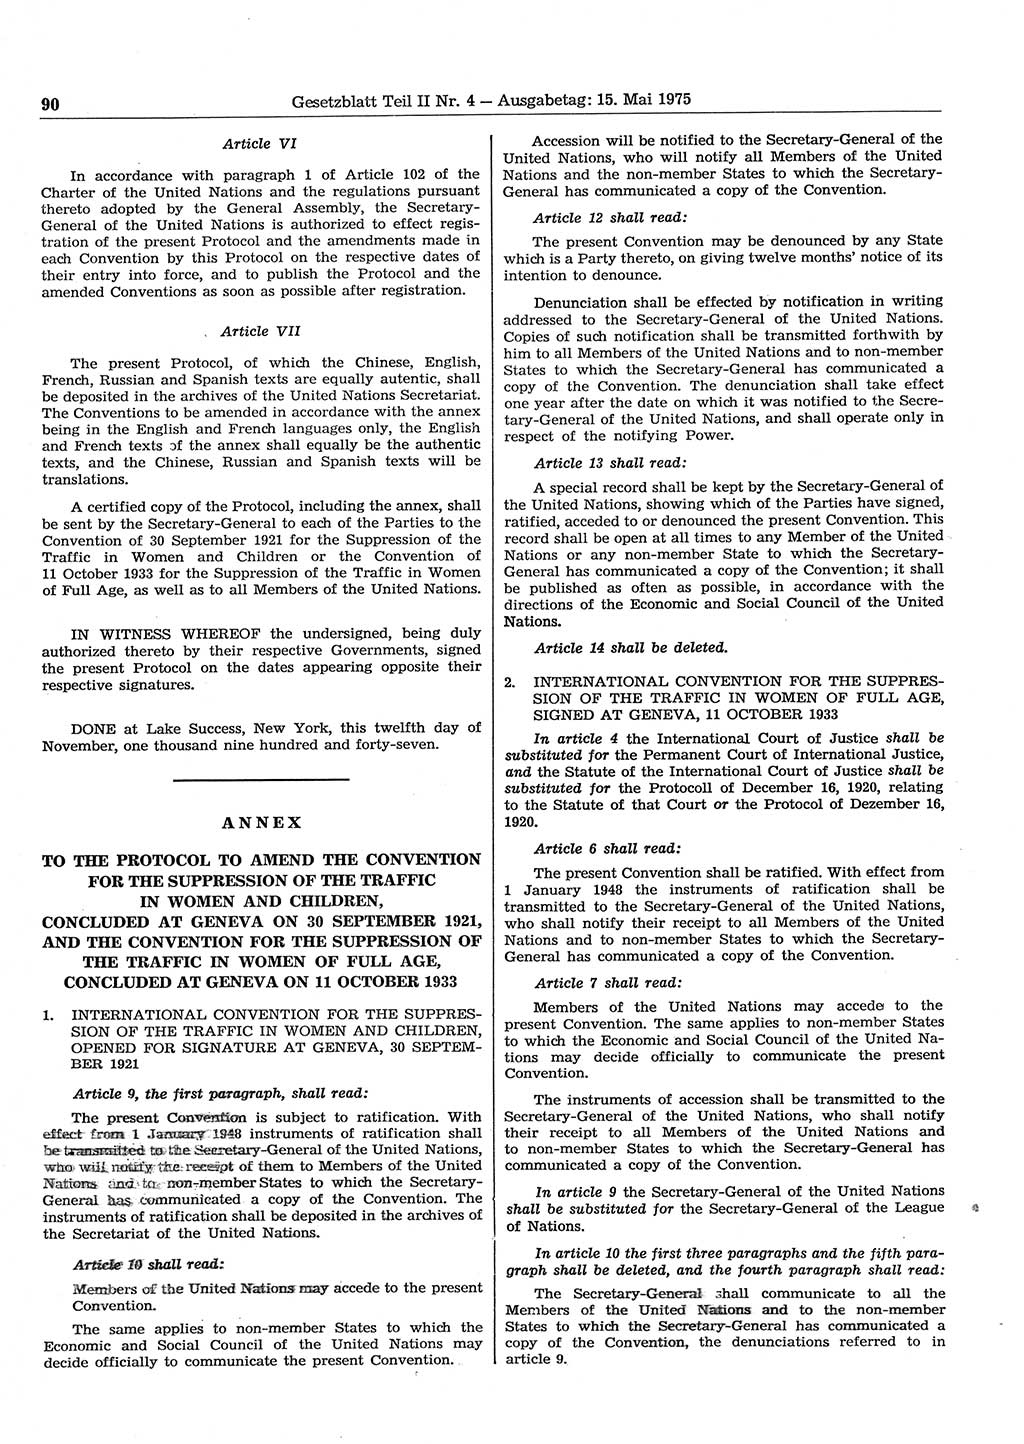 Gesetzblatt (GBl.) der Deutschen Demokratischen Republik (DDR) Teil ⅠⅠ 1975, Seite 90 (GBl. DDR ⅠⅠ 1975, S. 90)